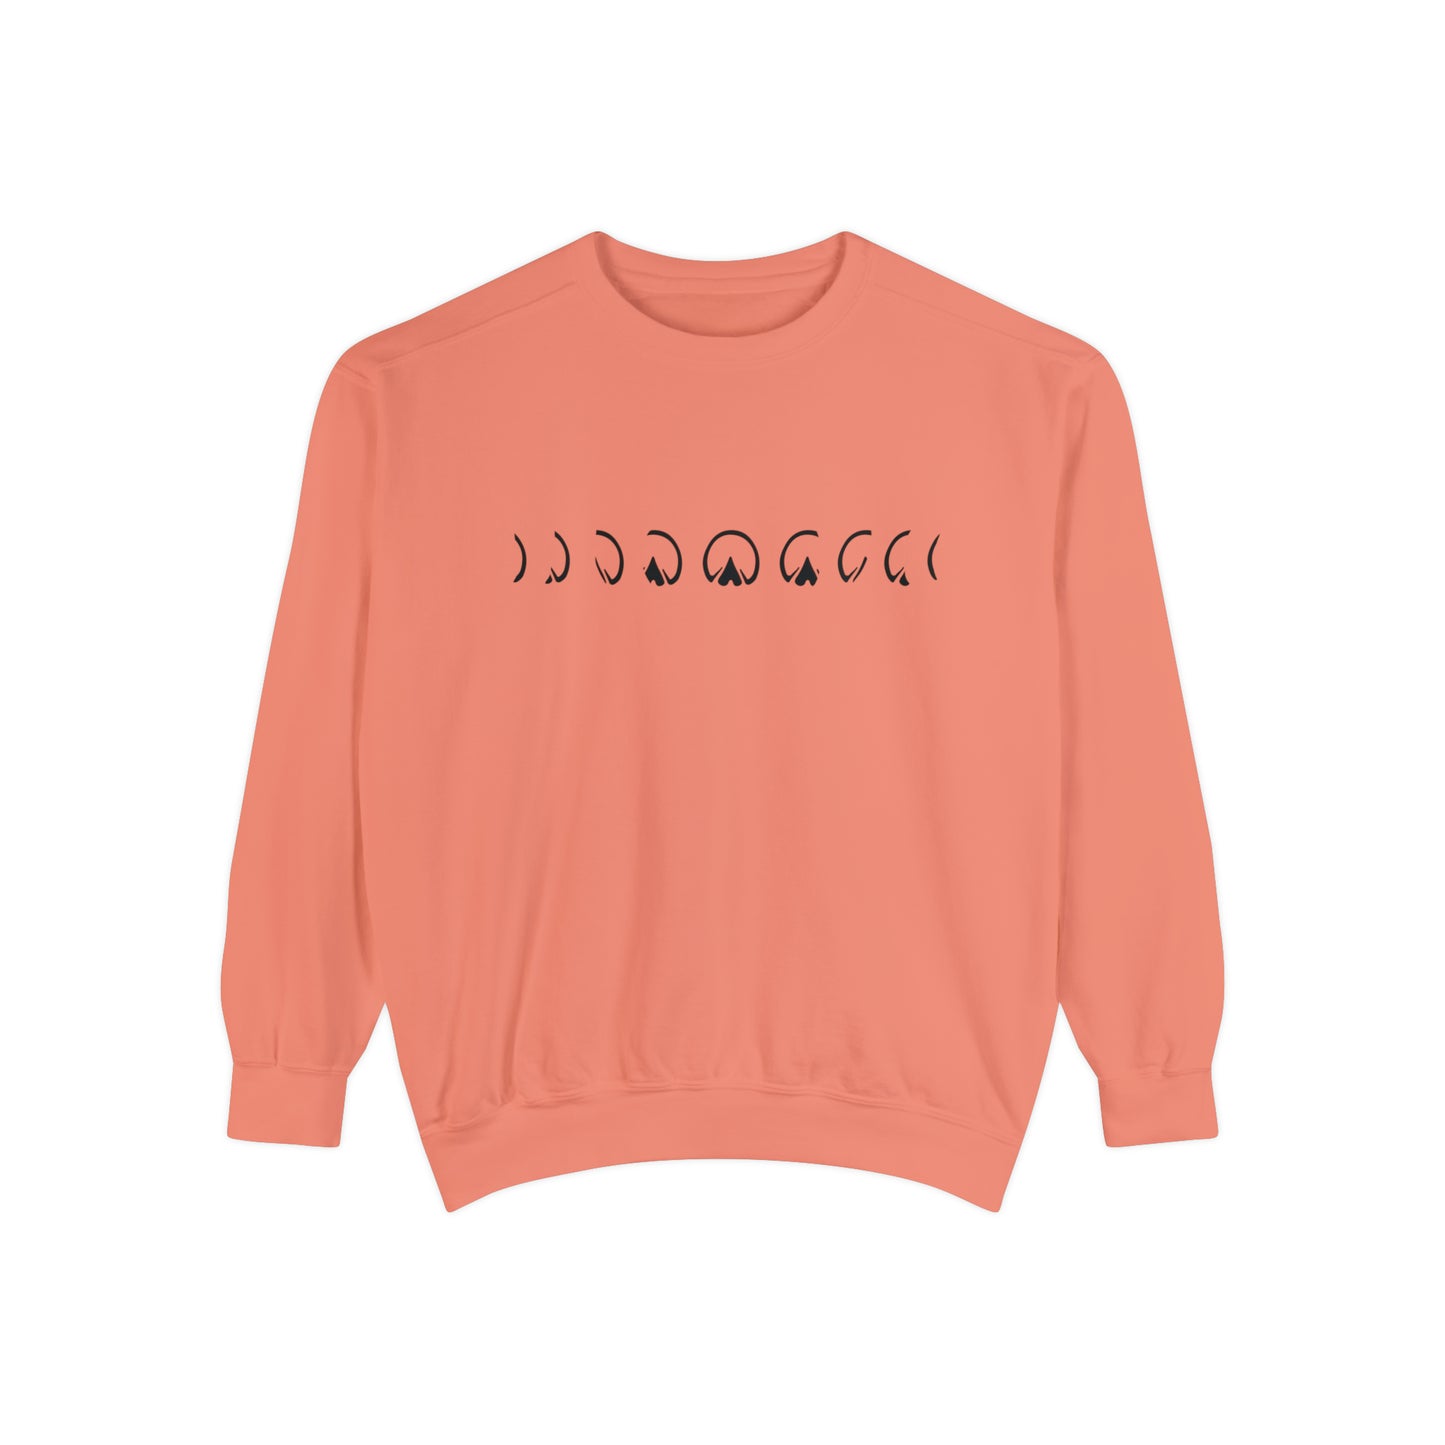 Hoof Moon Phases Garment-Dyed Sweatshirt